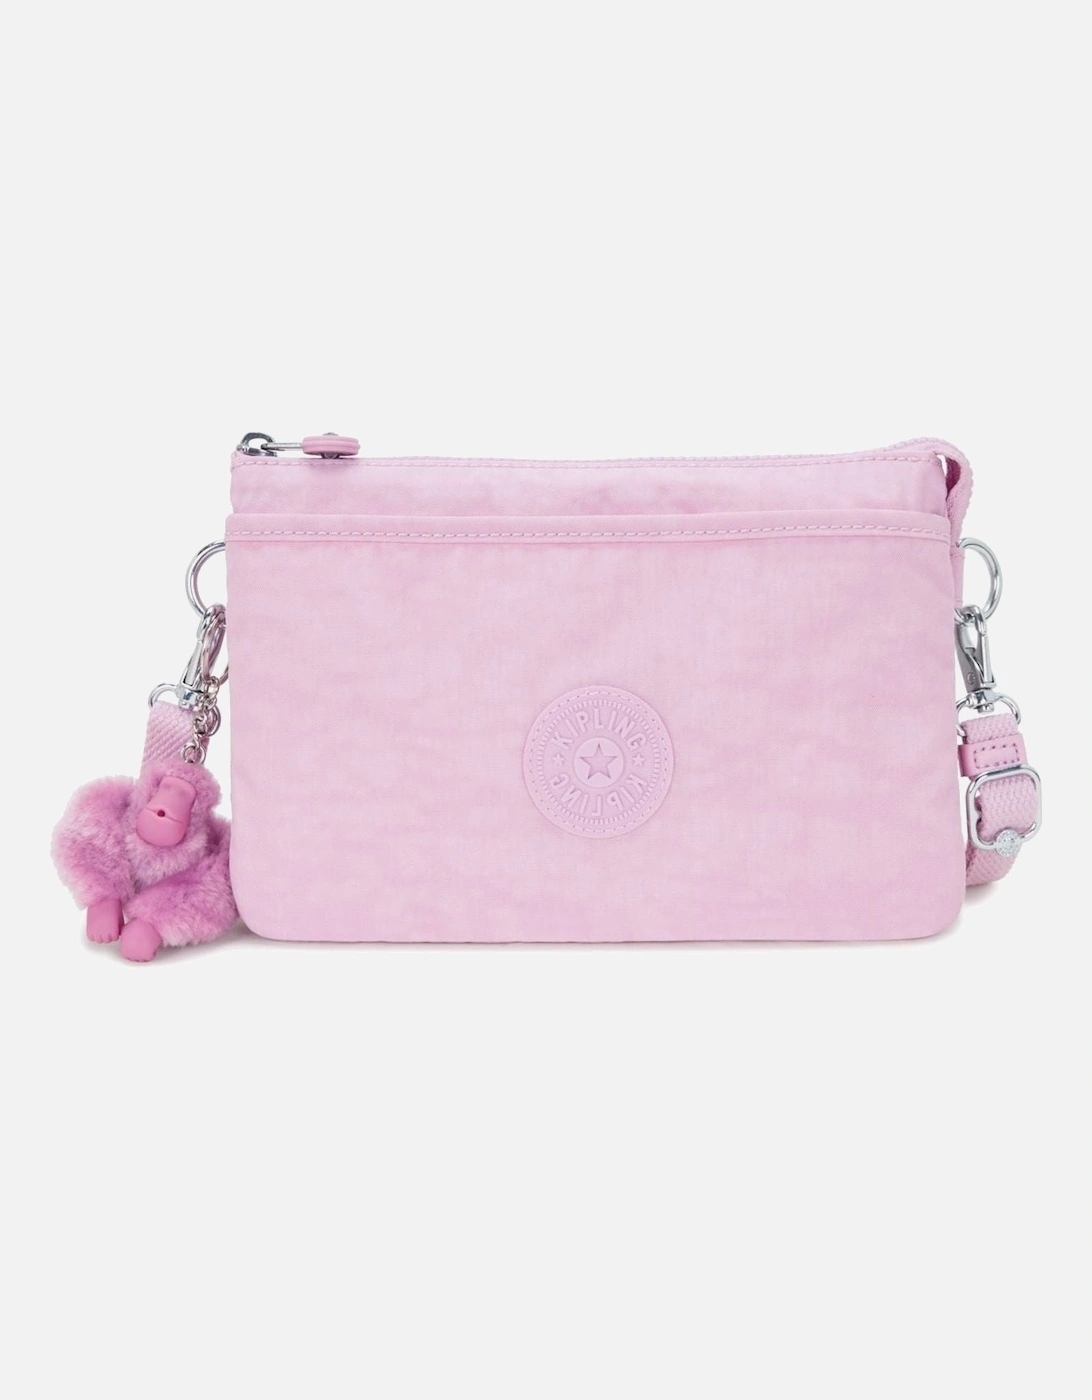 Riri  Handbag in blooming pink, 2 of 1